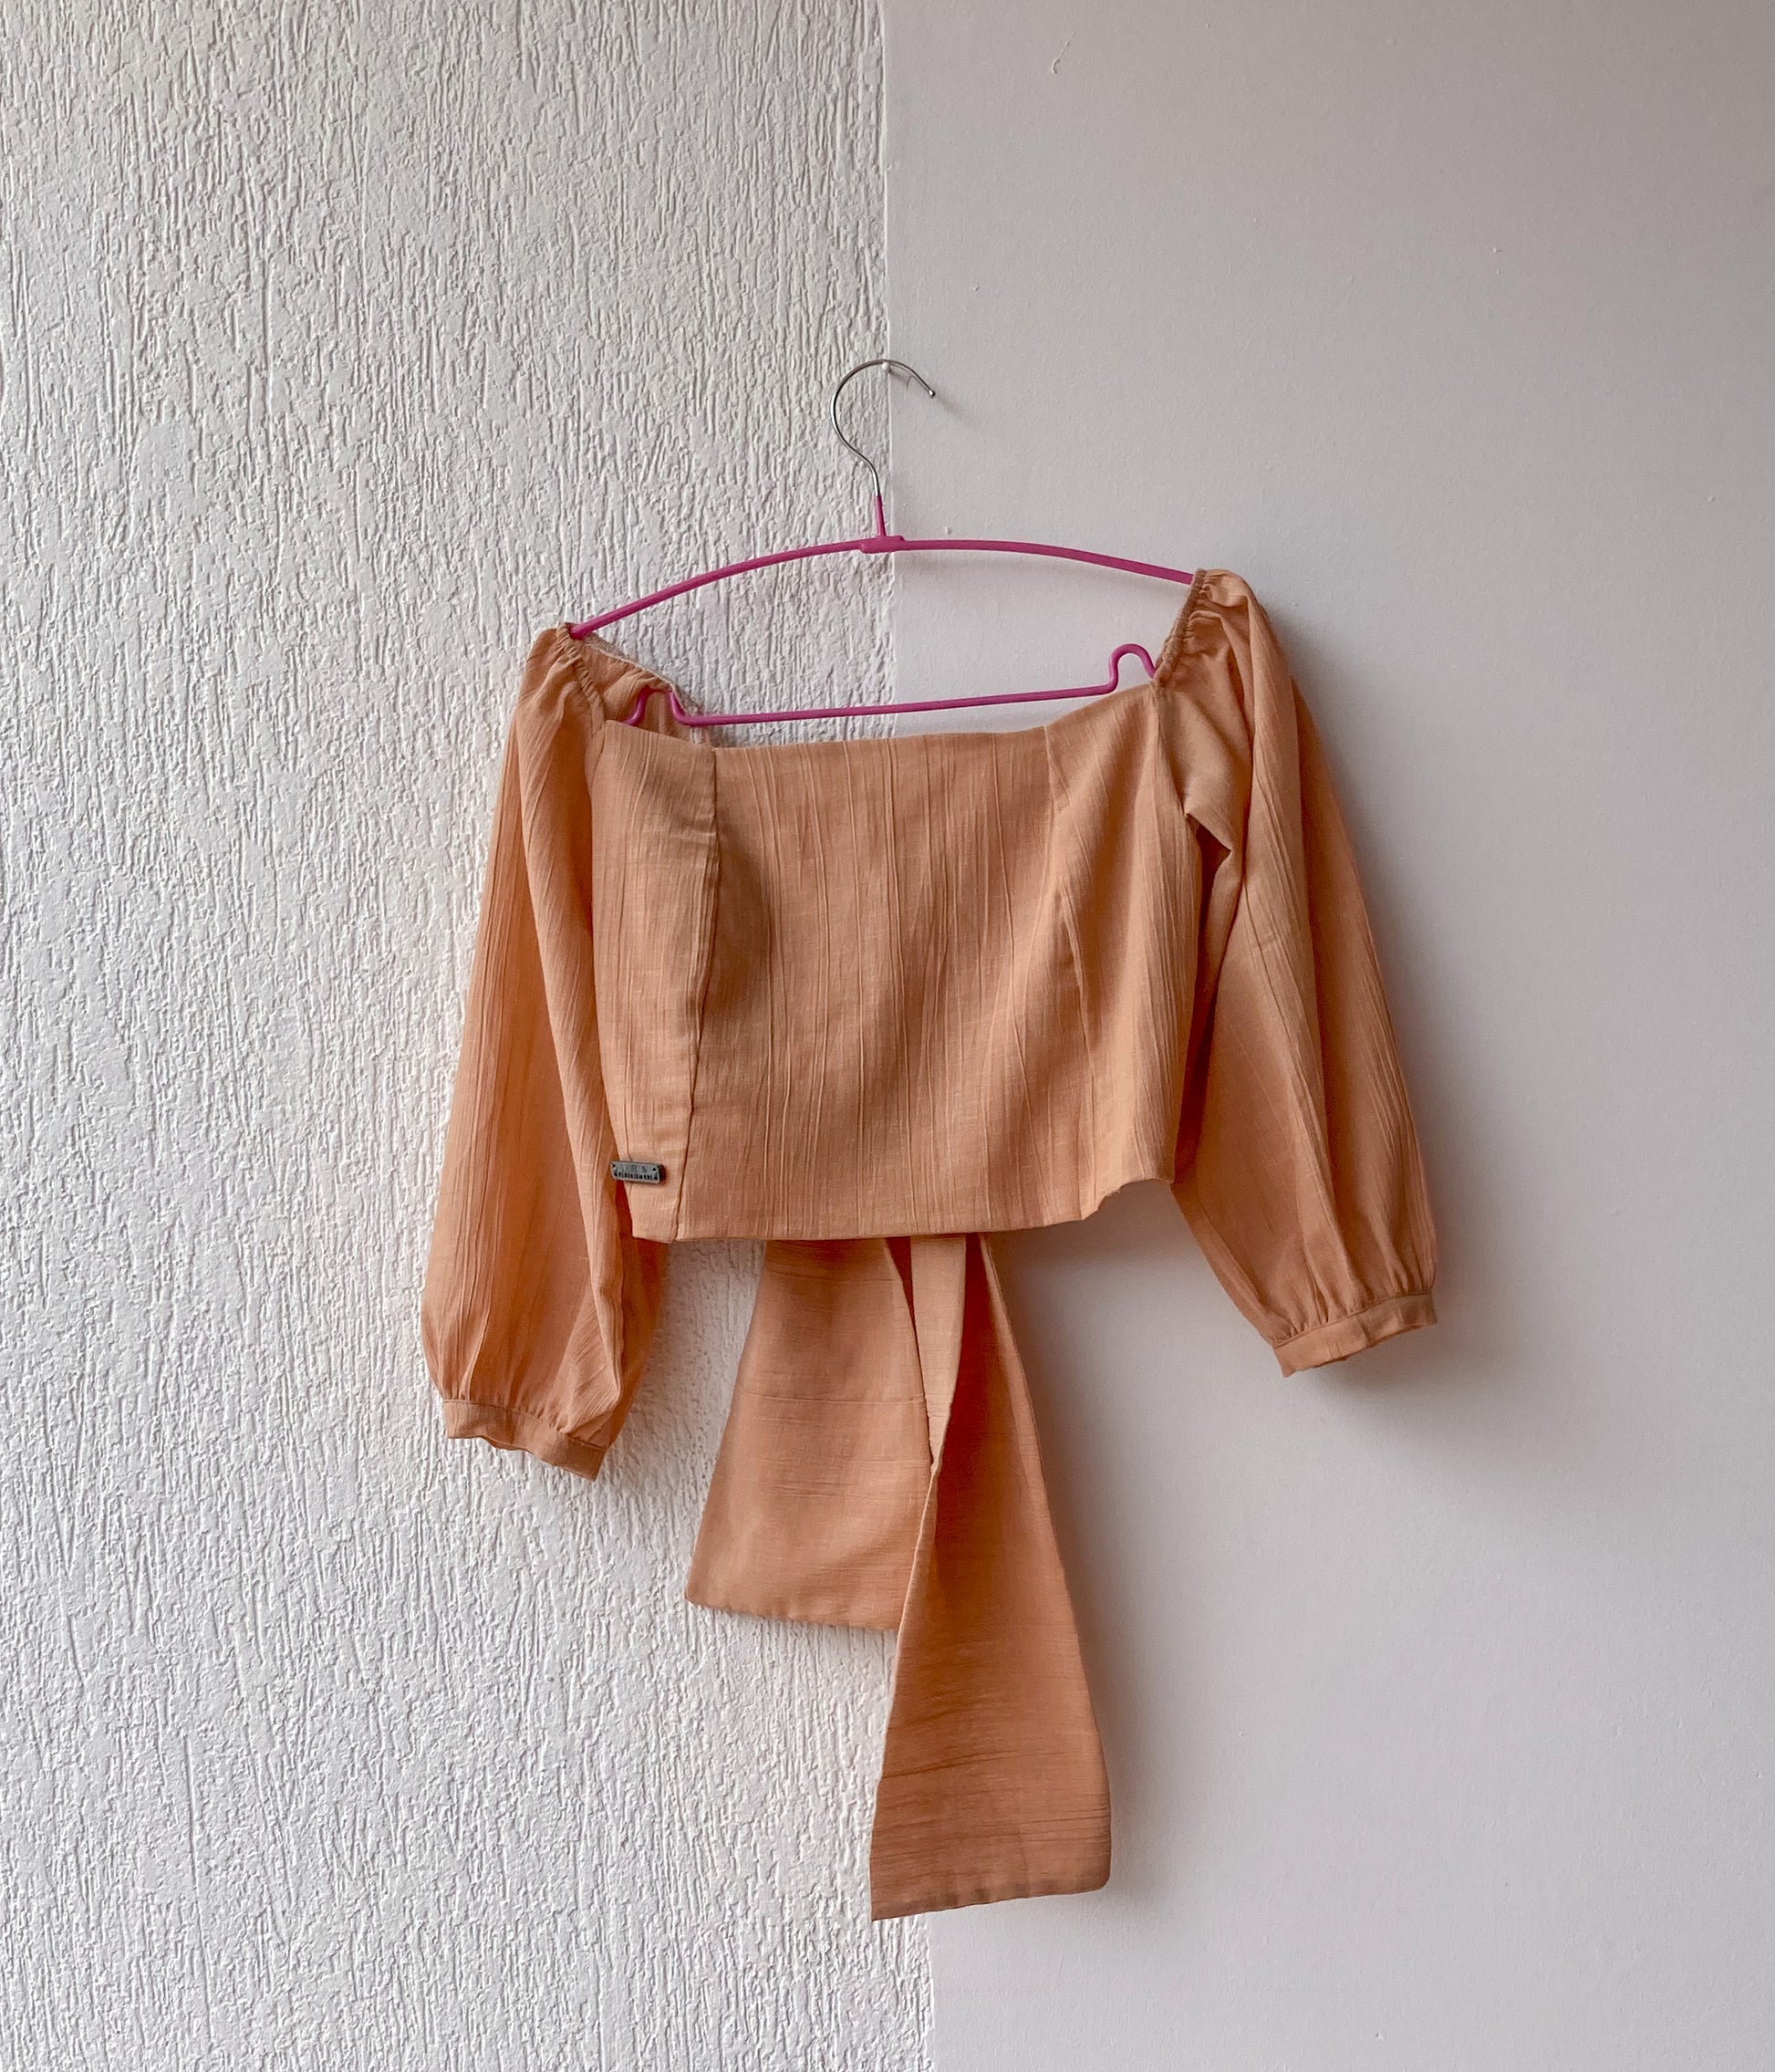 Esta blusa es un crop top que tiene un escote cuadrado y un nudo que se puede atar por delante o por detrás. Es una prenda versátil y cómoda que se adapta a diferentes estilos.  100% Colombiano, producto local.